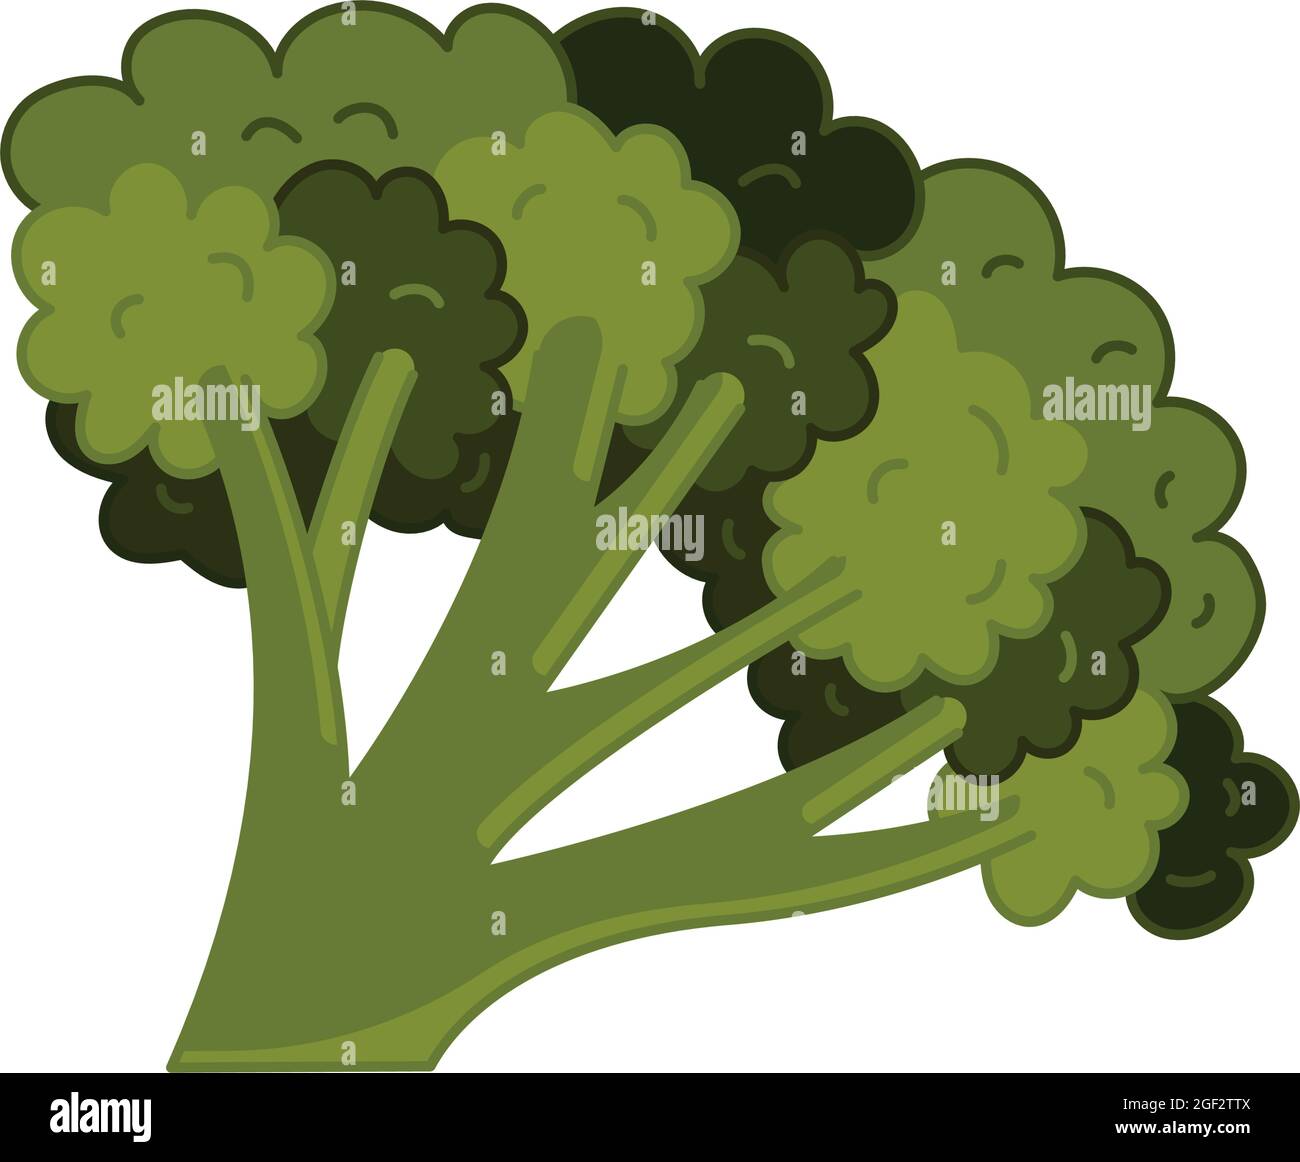 Icona dei broccoli in stile piatto e disegnato a mano, isolato su sfondo bianco. Illustrazione vettoriale. Illustrazione Vettoriale